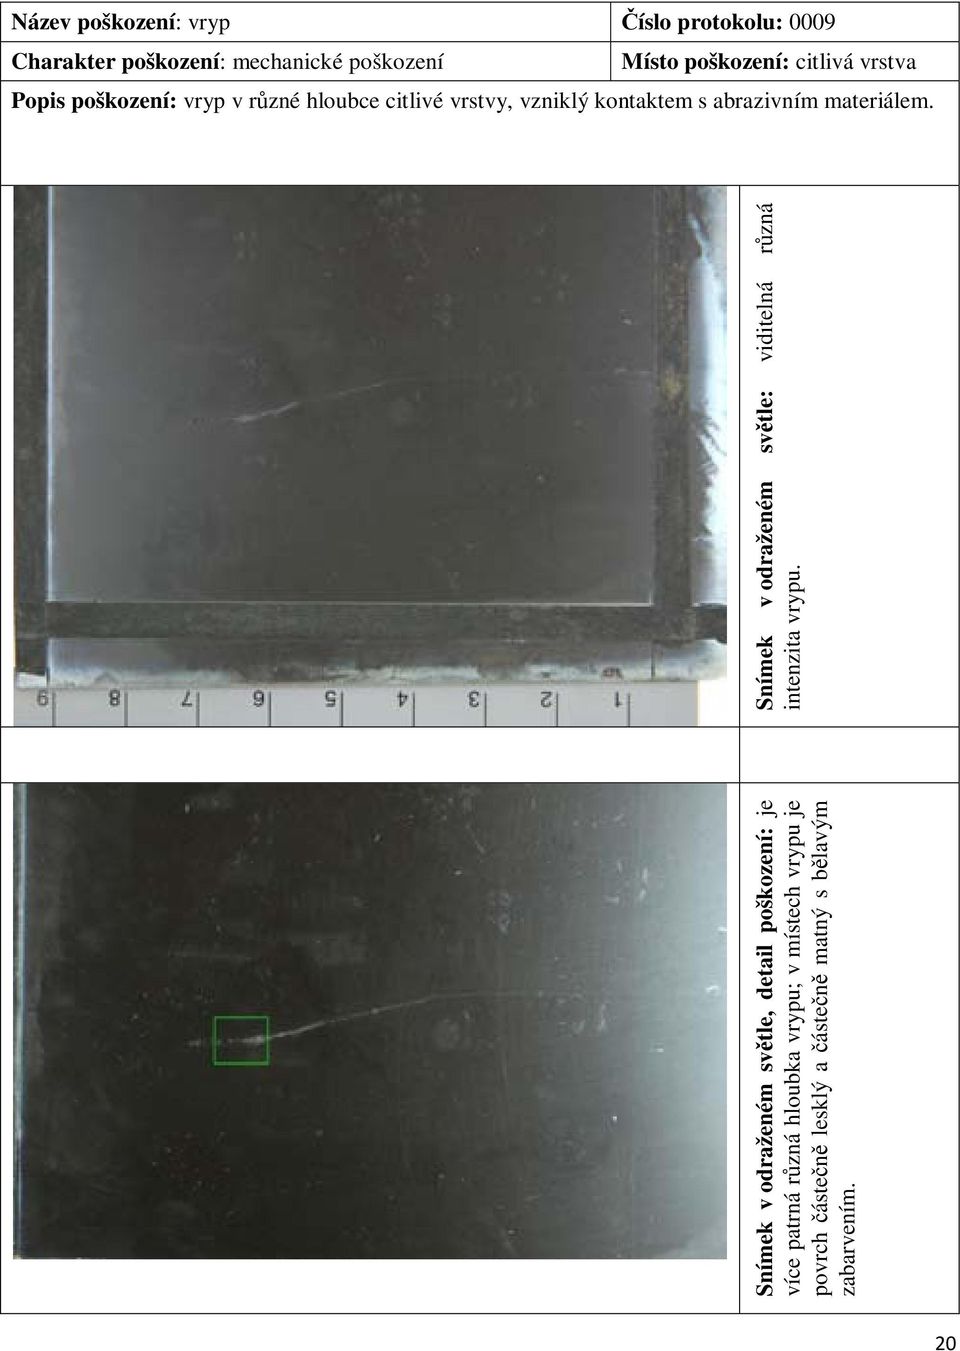 Snímek v odraženém světle, detail poškození: je více patrná různá hloubka vrypu; v místech vrypu je